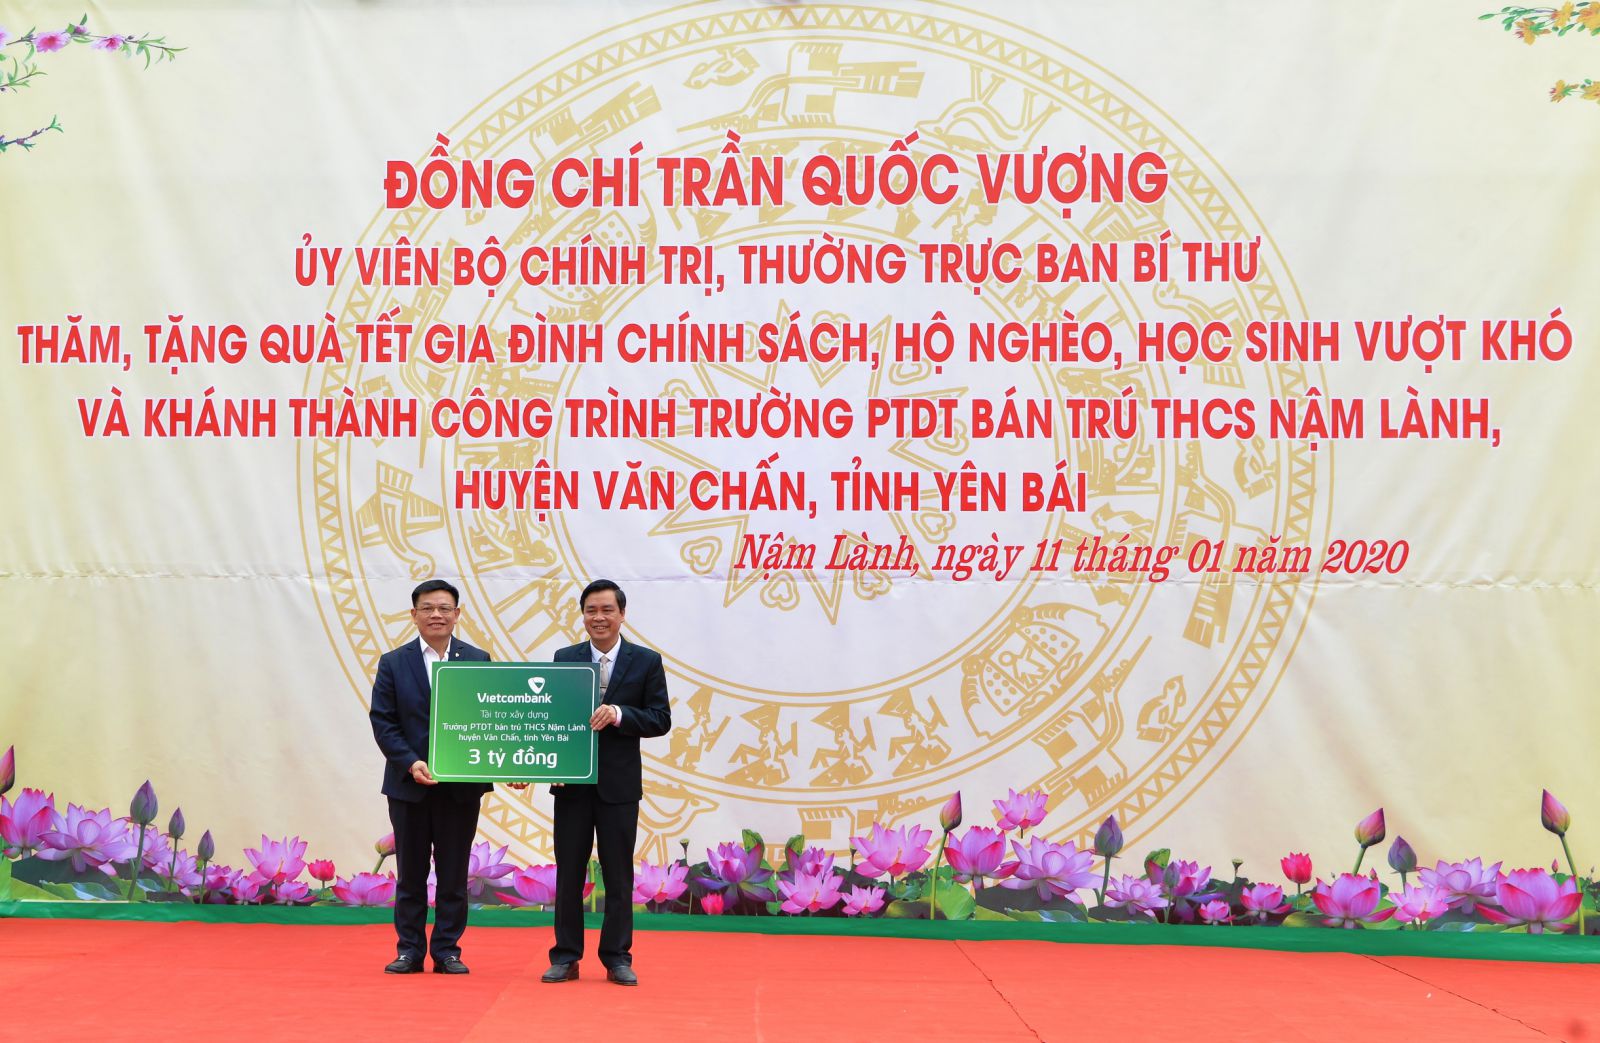 Đ/c Đào Minh Tuấn - Phó Tổng Giám đốc, Chủ tịch Công đoàn Vietcombank (bên trái) trao biển tượng trưng số tiền 3 tỷ đồng tài trợ của Vietcombank cho đại diện địa phương để xây dựng Trường PTDT Bán trú THCS Nậm Lành, huyện Văn Chấn